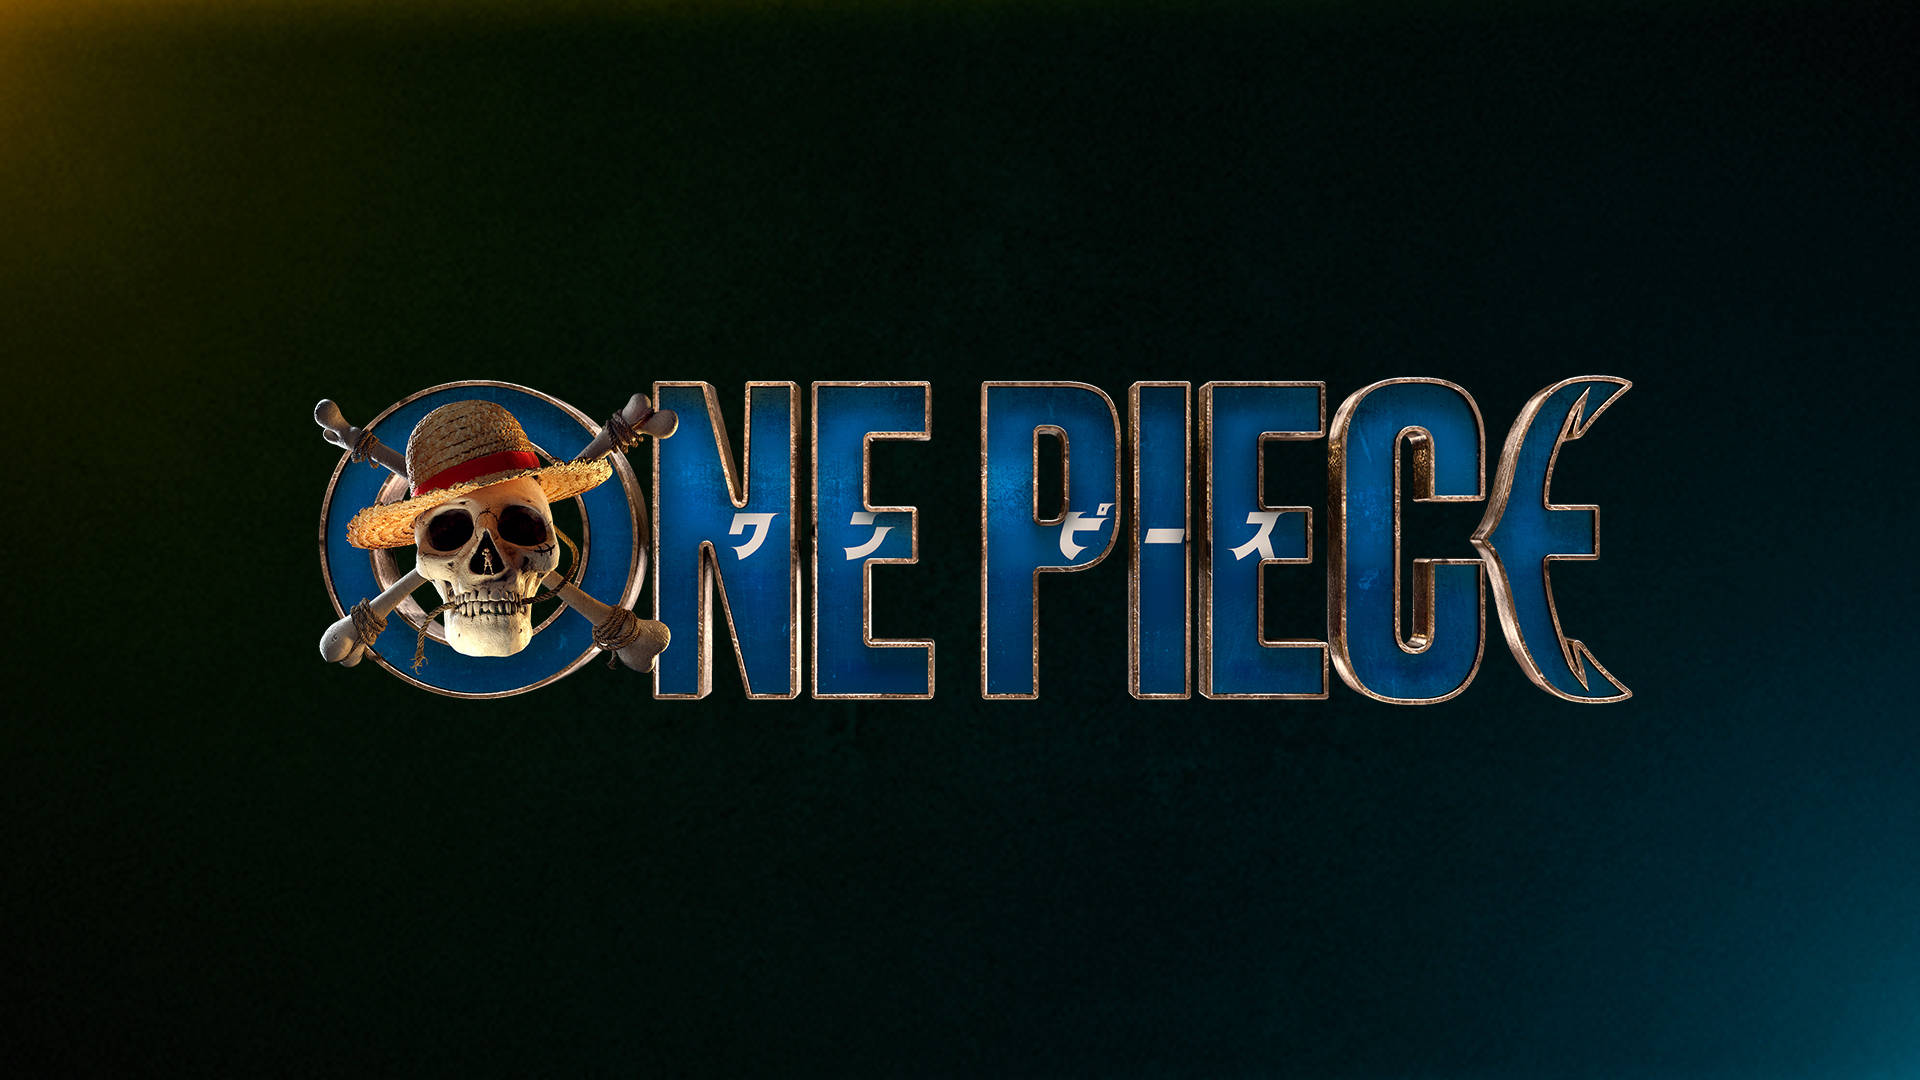 Nếu bạn muốn tìm kiếm các hình ảnh One Piece chất lượng cao, hãy truy cập ngay khu vực này. Bộ sưu tập One Piece 4k Backgrounds sẽ đem lại cho bạn những hình ảnh tuyệt đẹp với độ phân giải cao và chi tiết sắc nét. Hãy tận hưởng những bức tranh đẹp mắt này và trở thành một fan One Piece thật sự nhé!